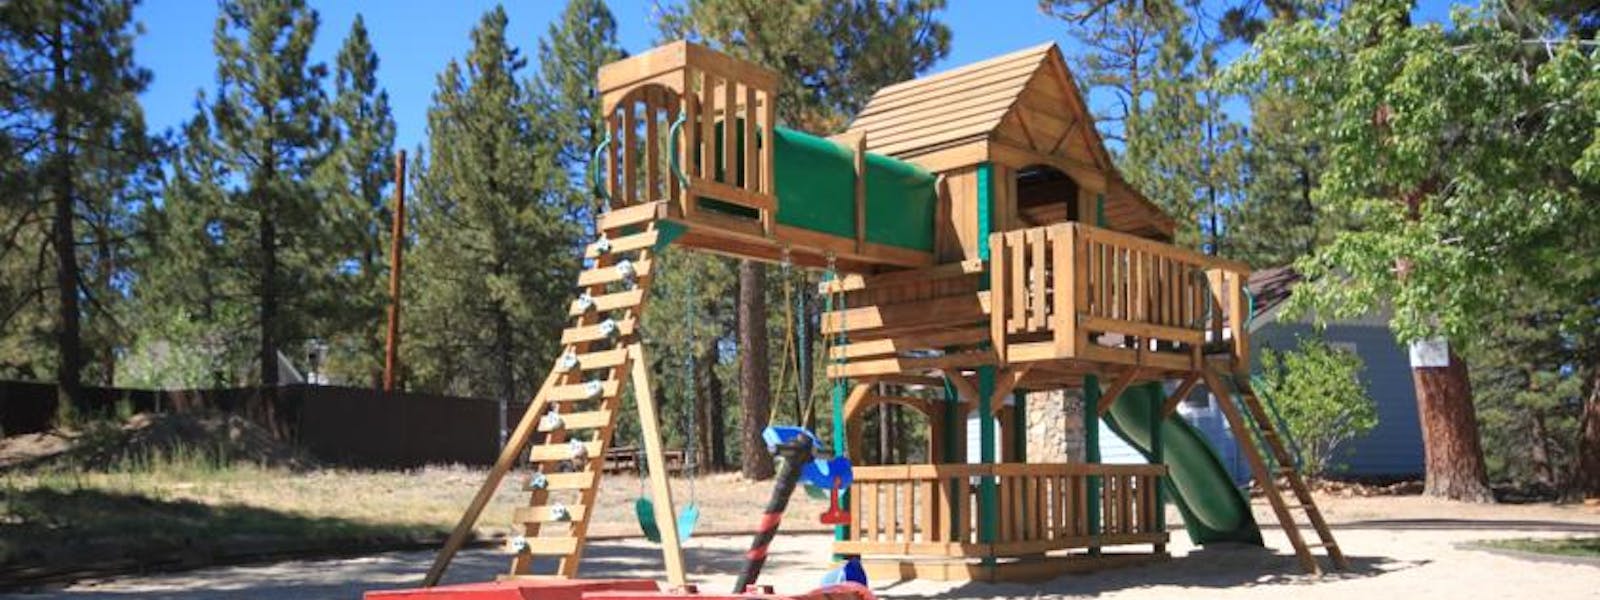 Blue Horizon Lodge playground 2